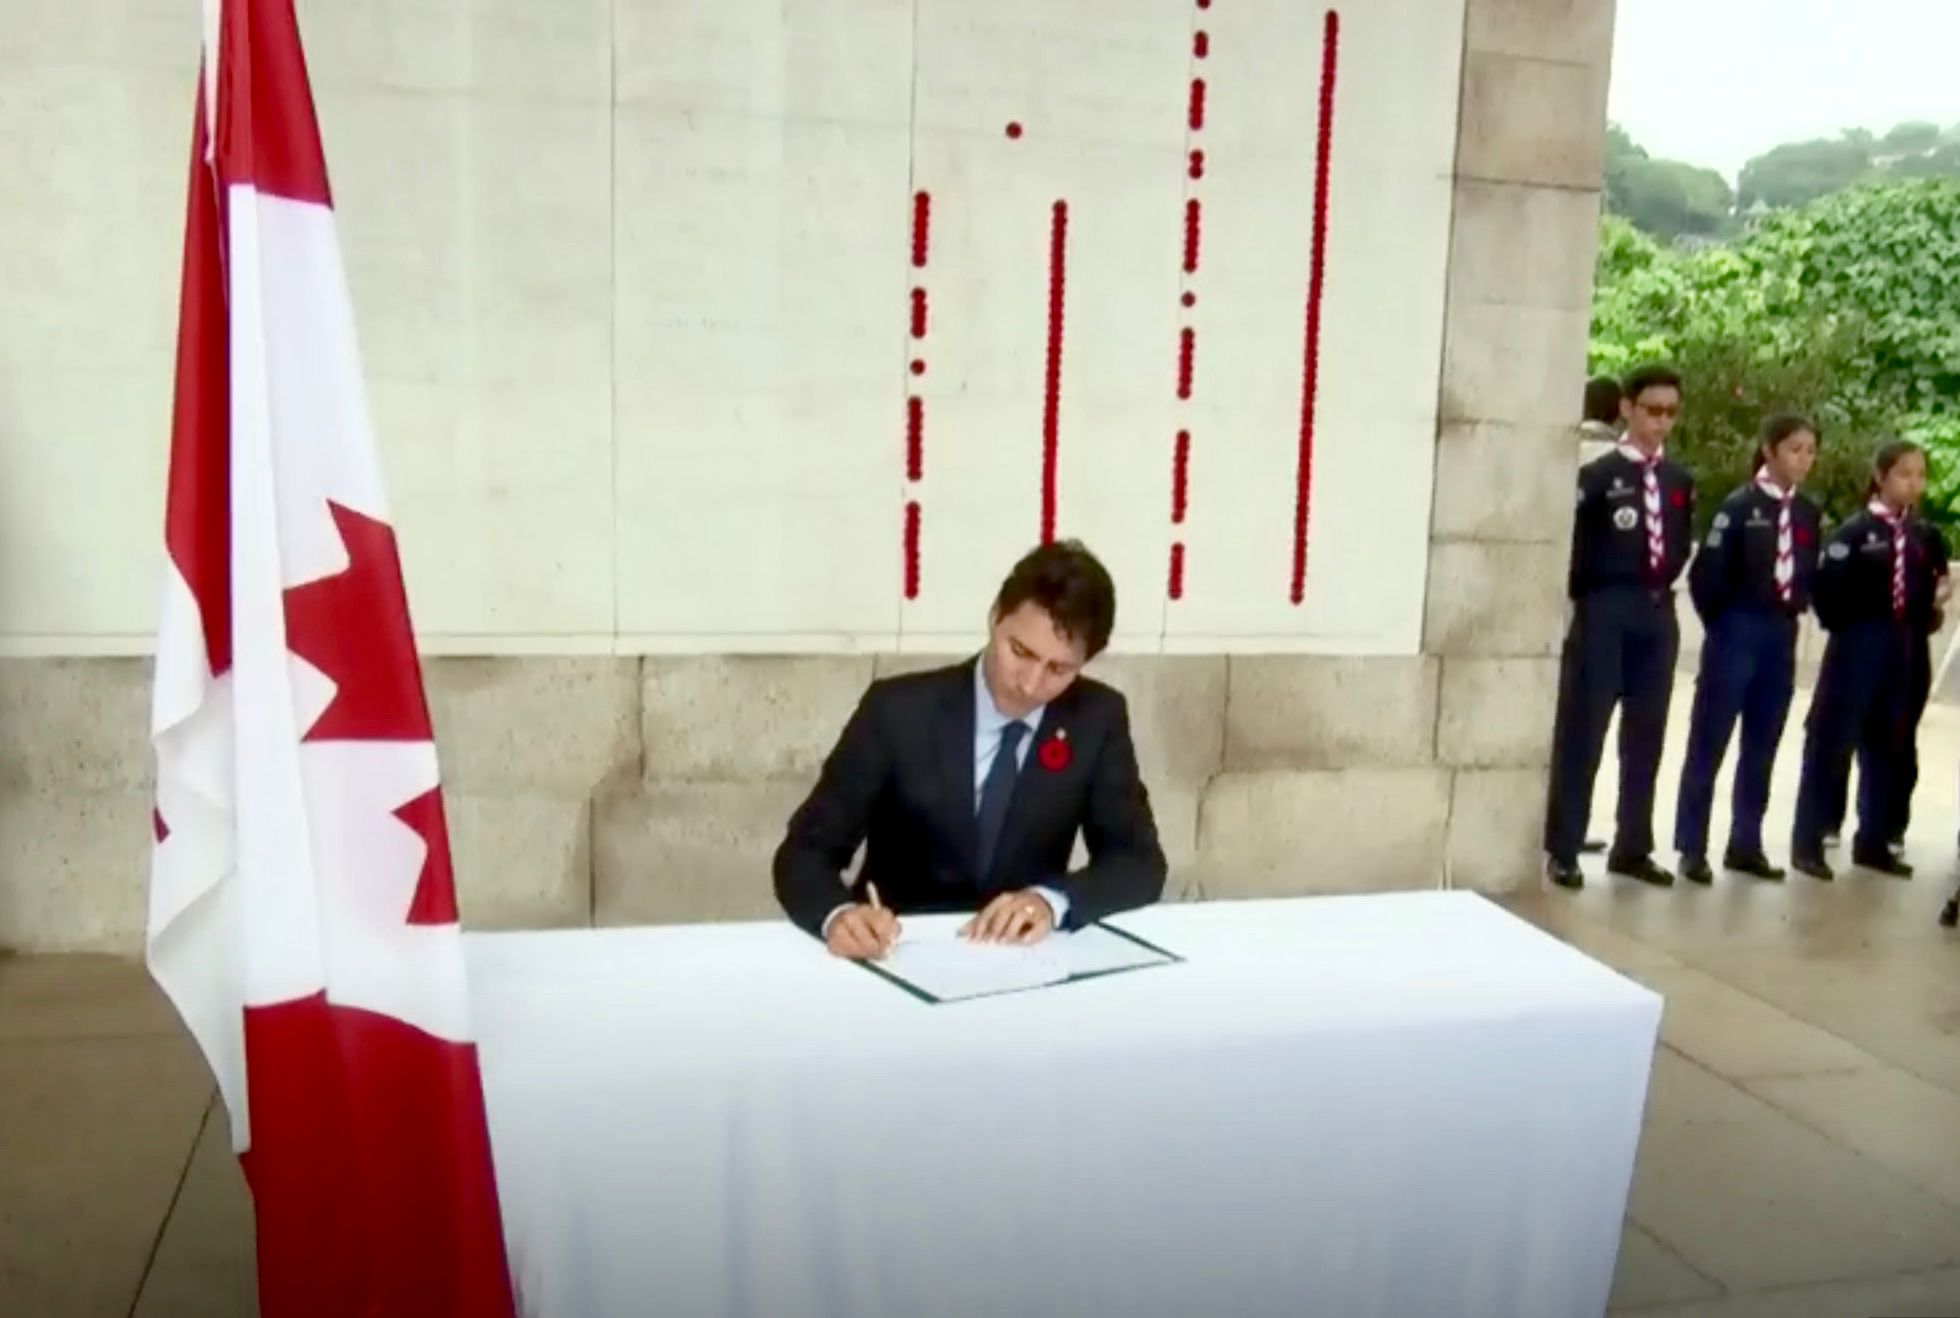 1 PM Trudeau signs guest book